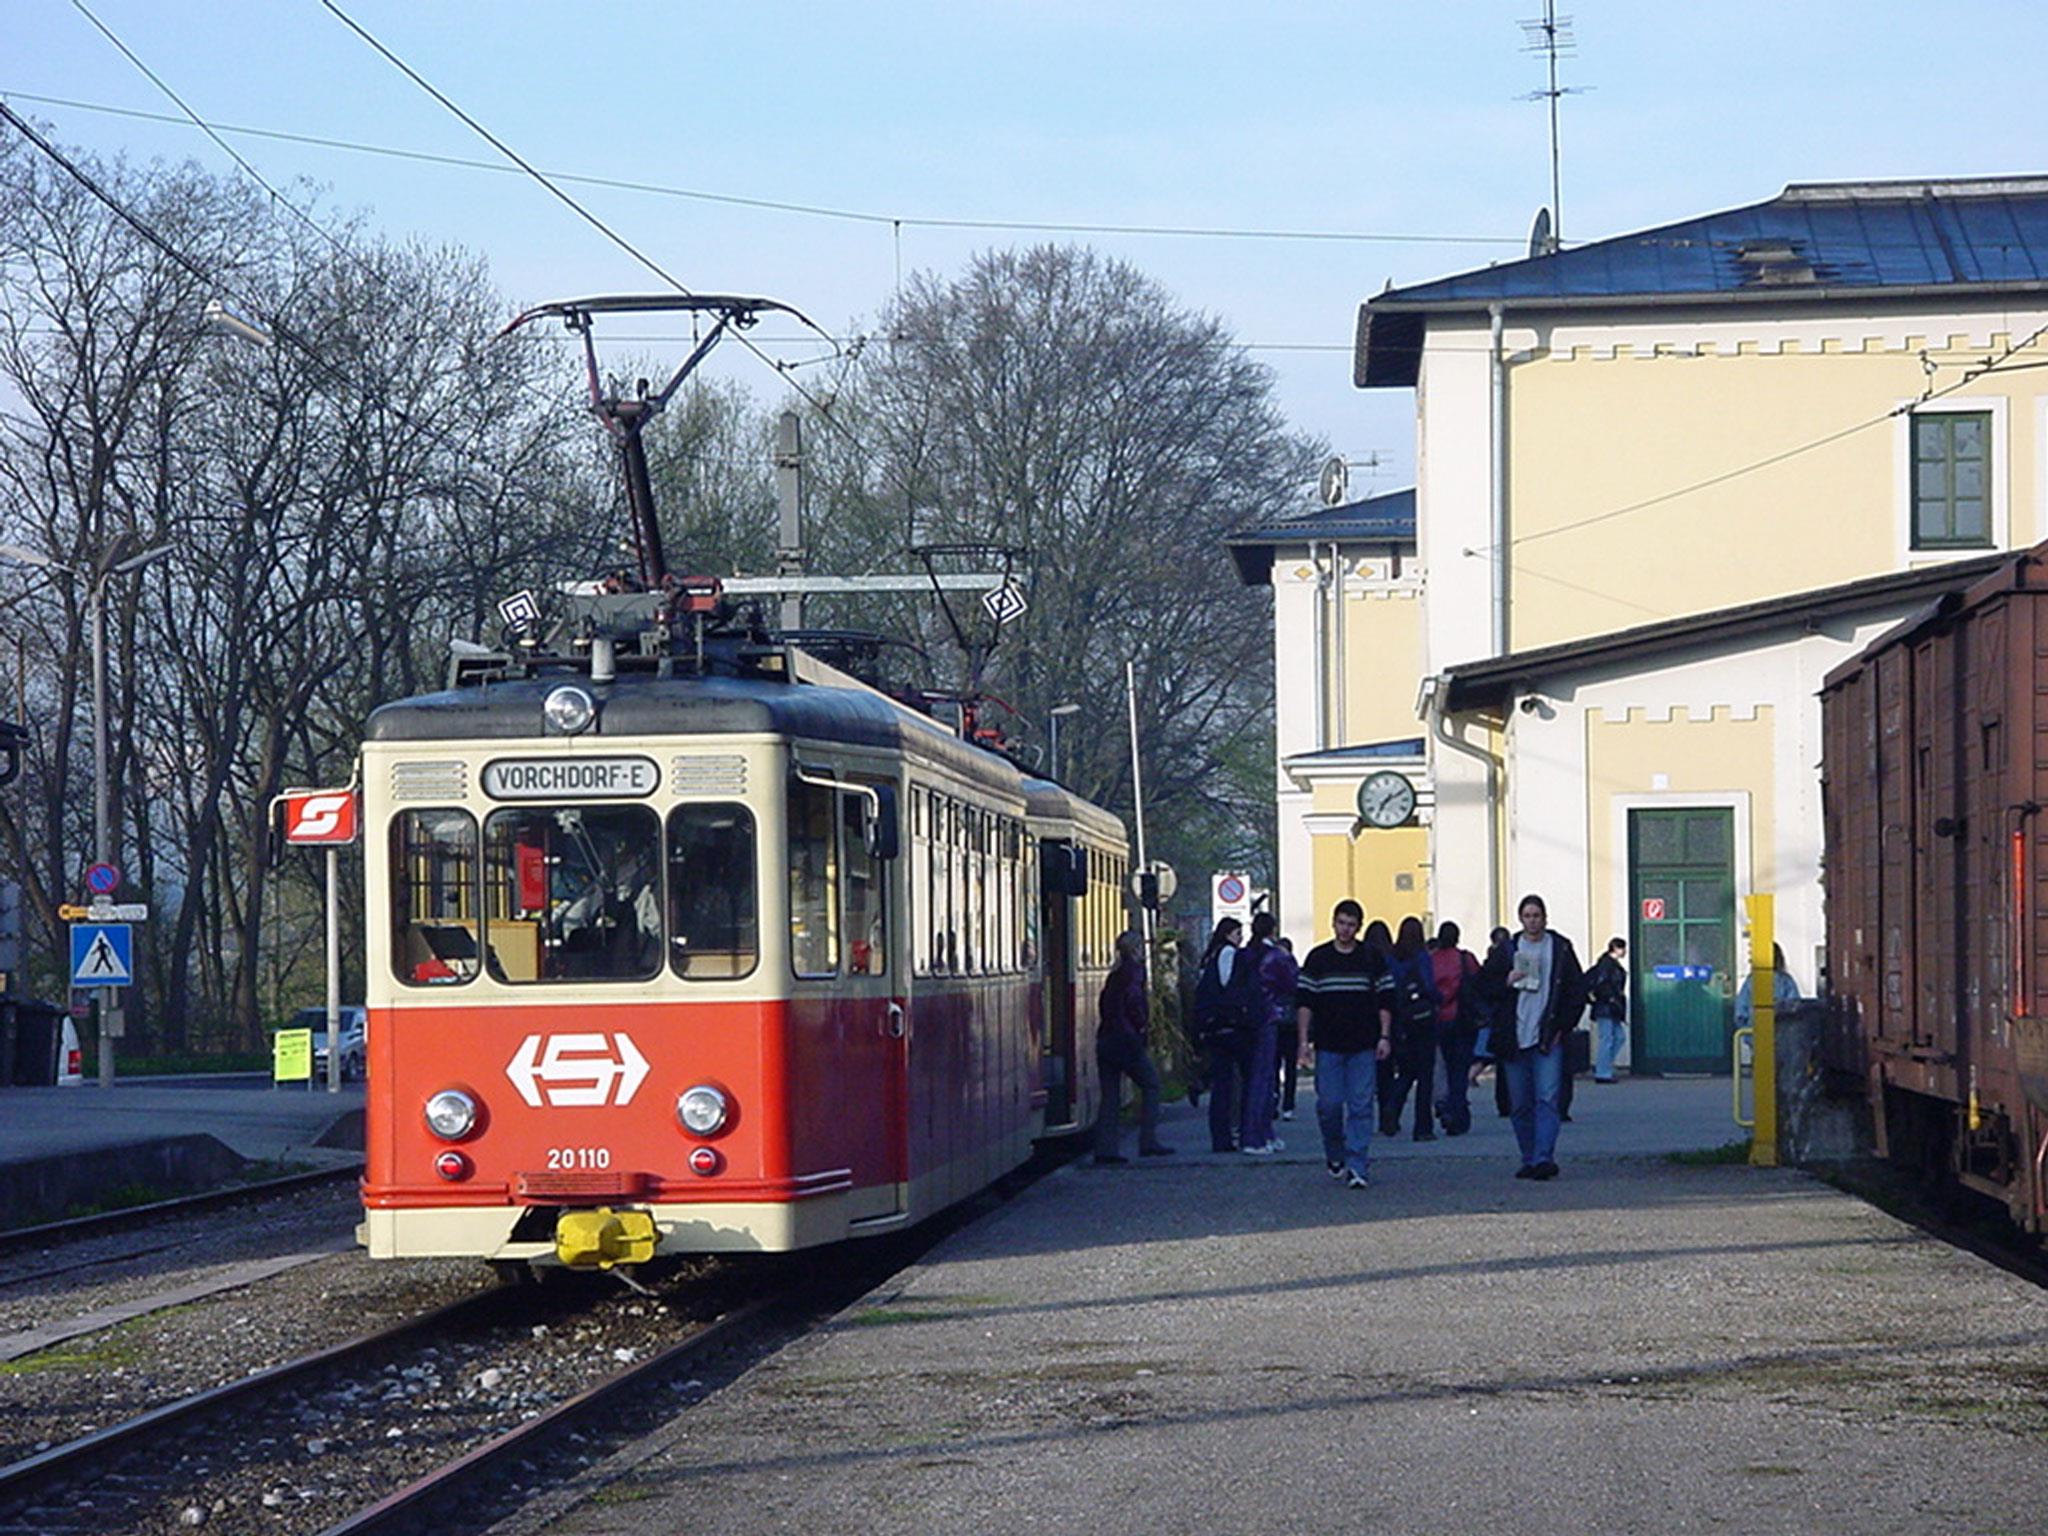 Bahnhof Vorchdorf Traunseebahn Vorchdorfer Bahn Stern Hafferl